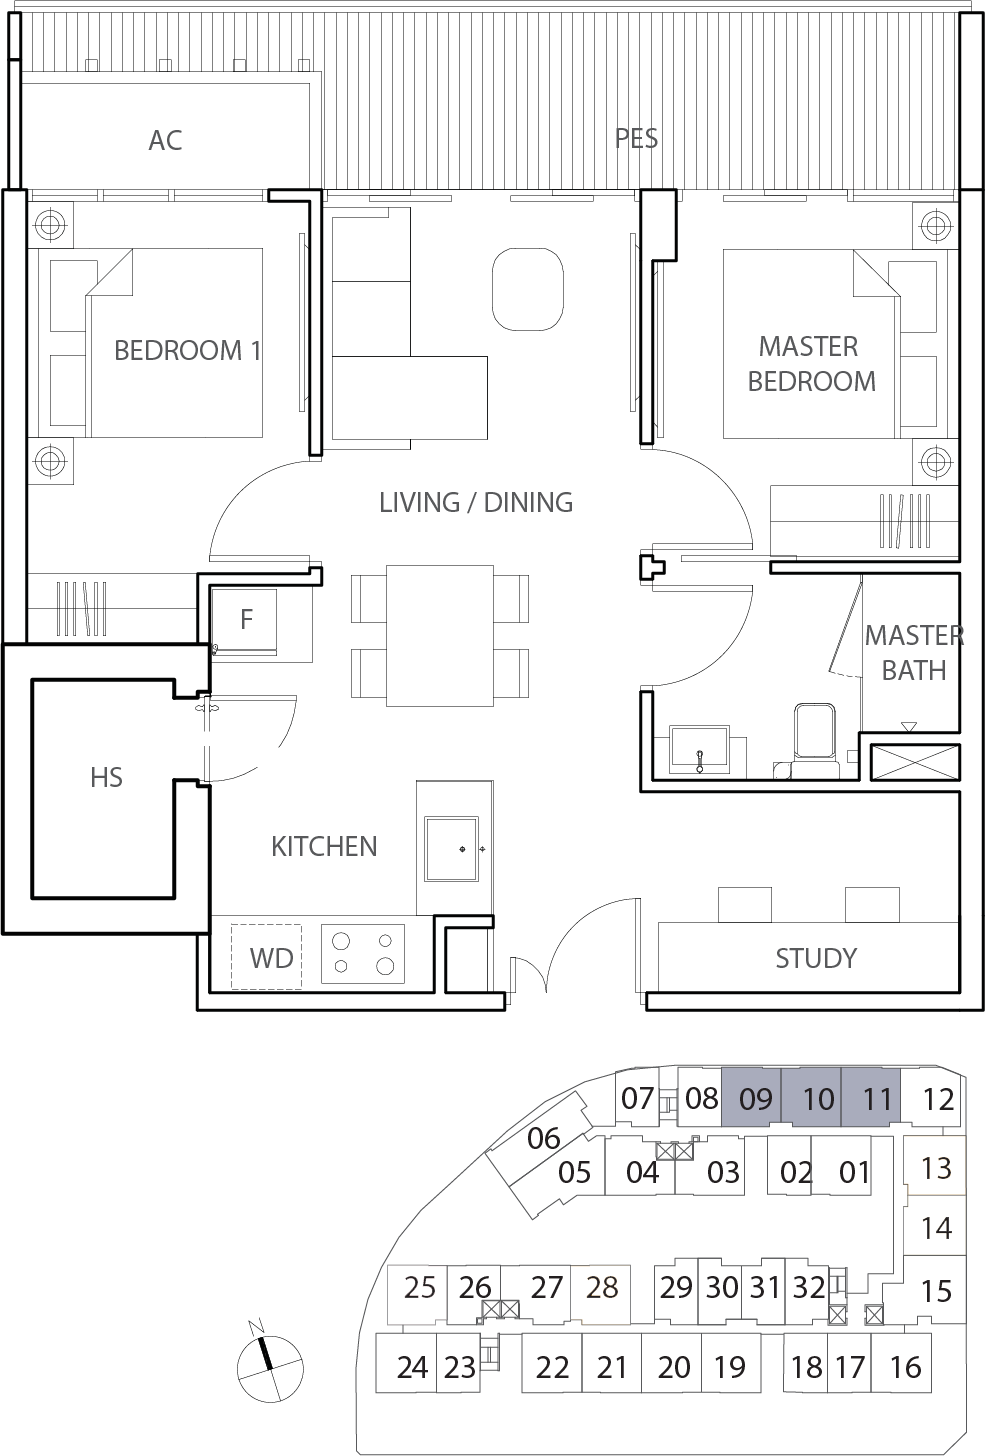 Floor Plan for Residential Type eB3